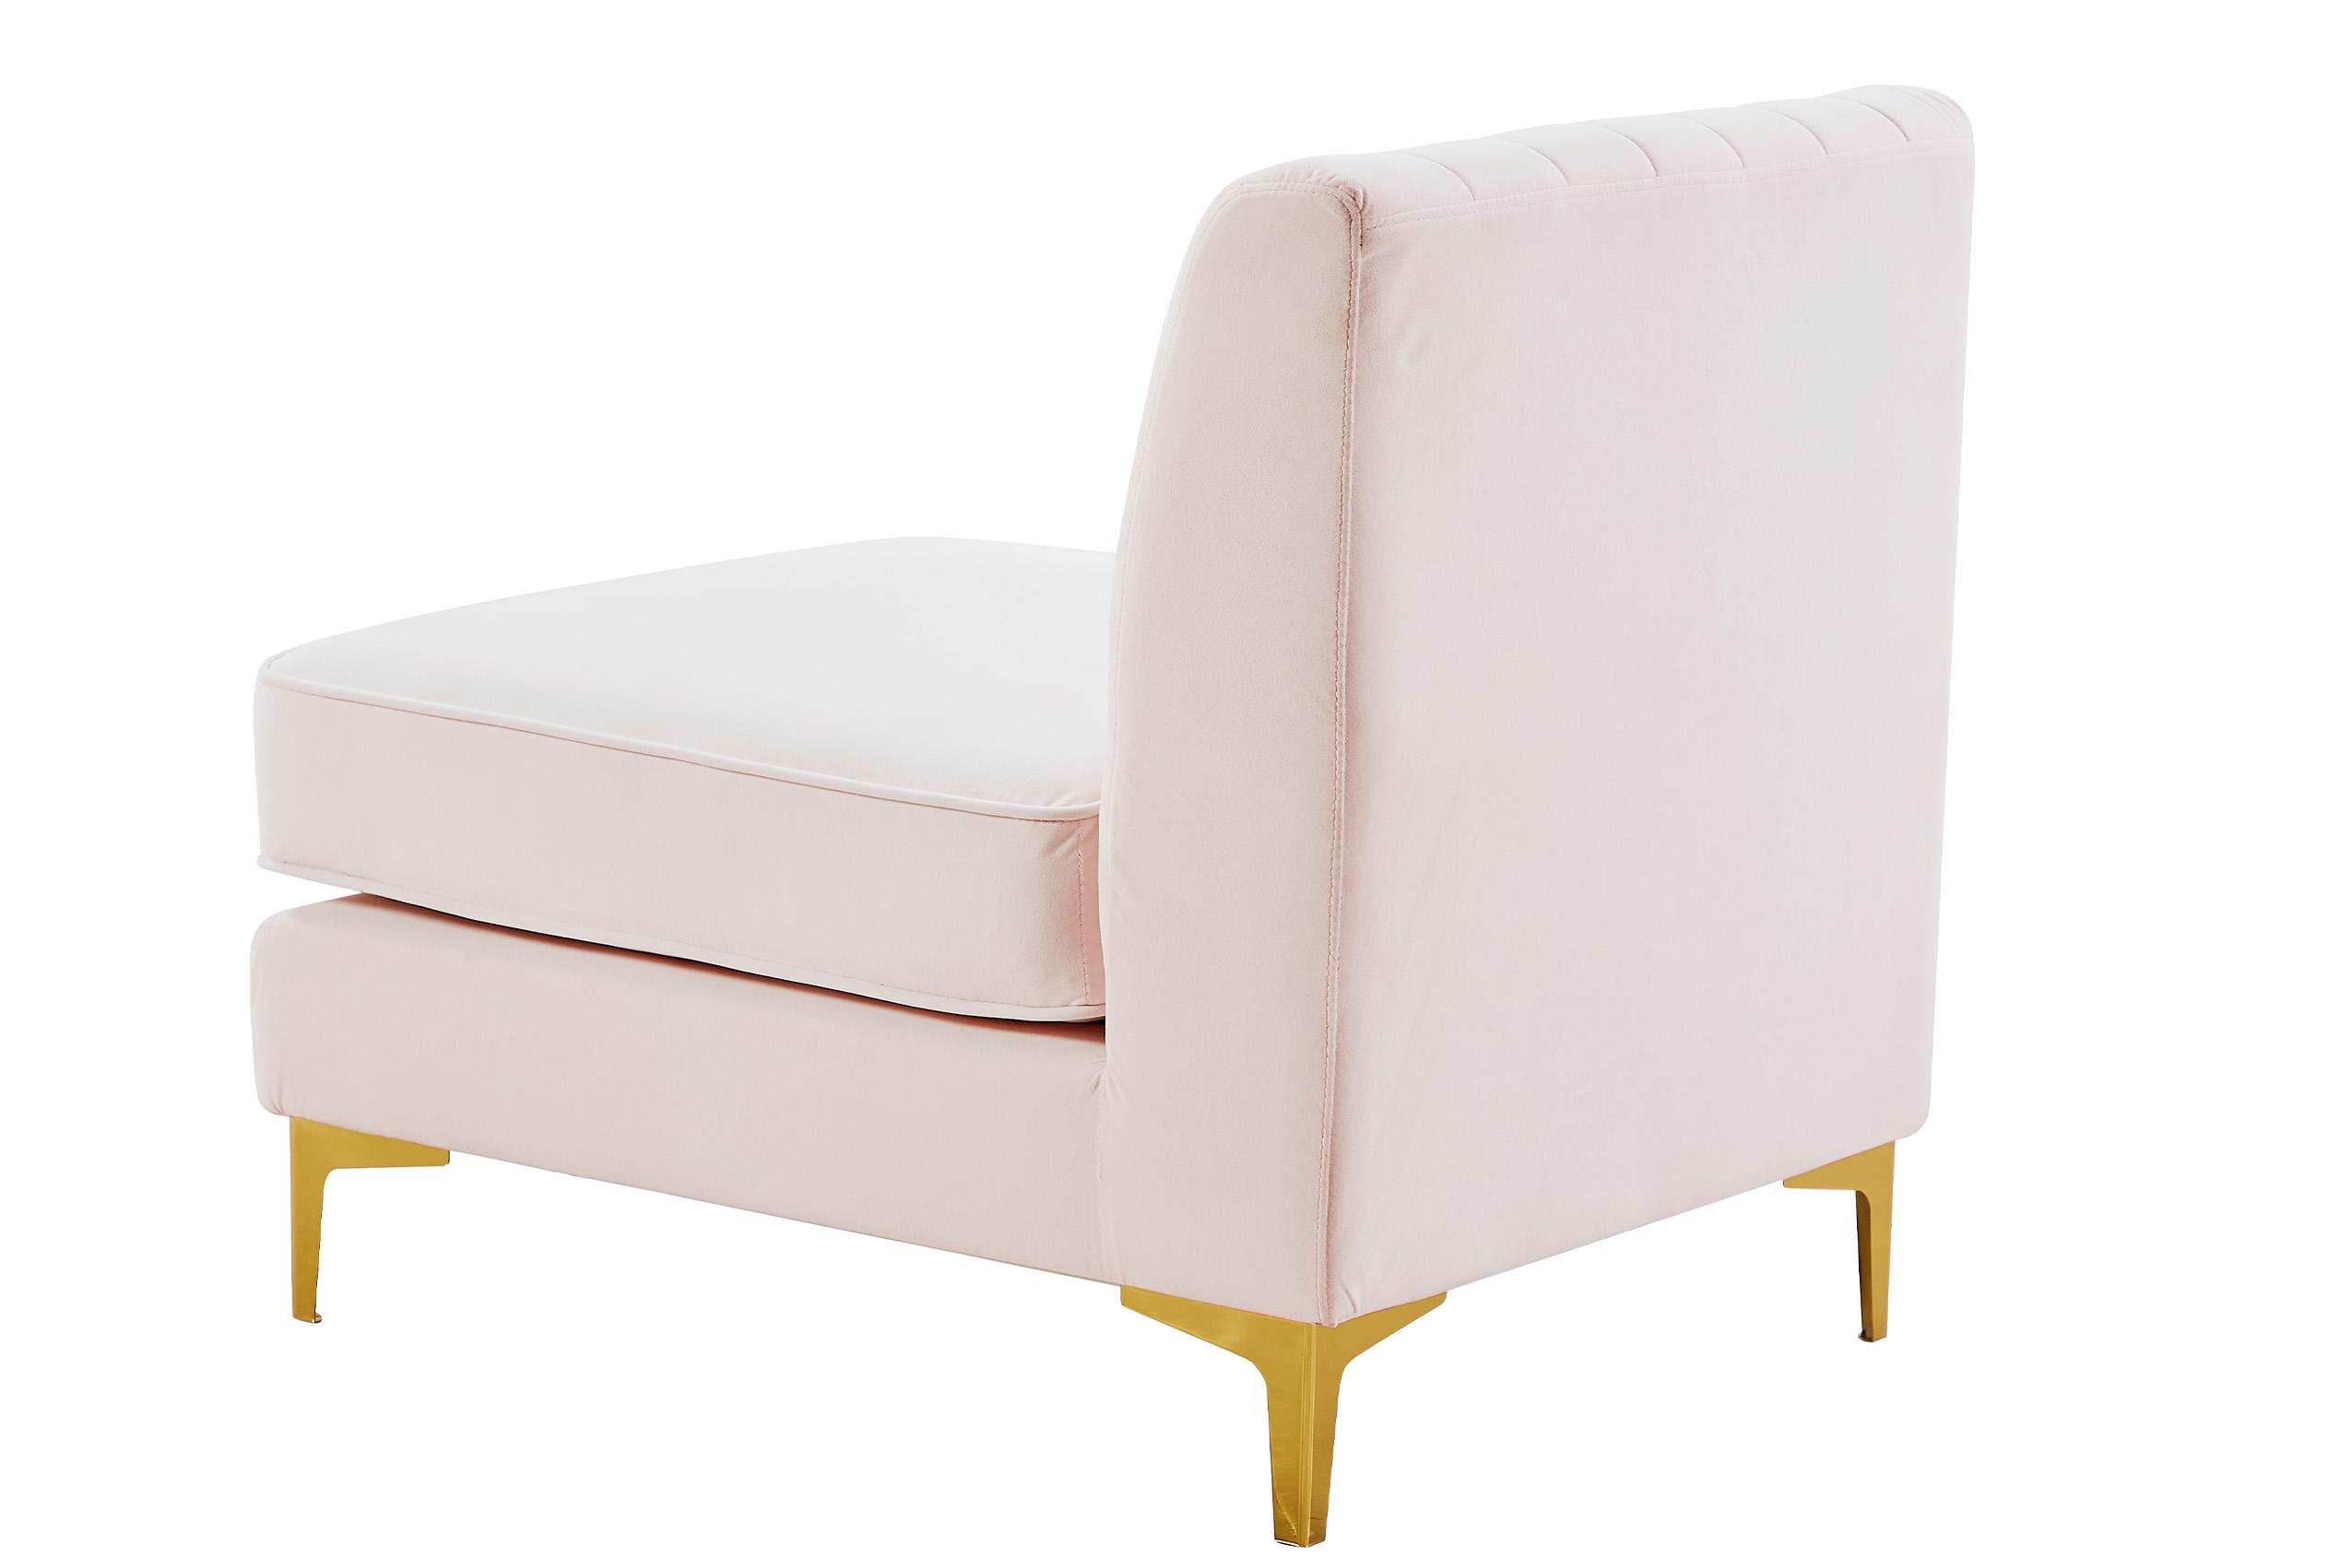 

    
604Pink-Armless Meridian Furniture Modular Armless Chair
